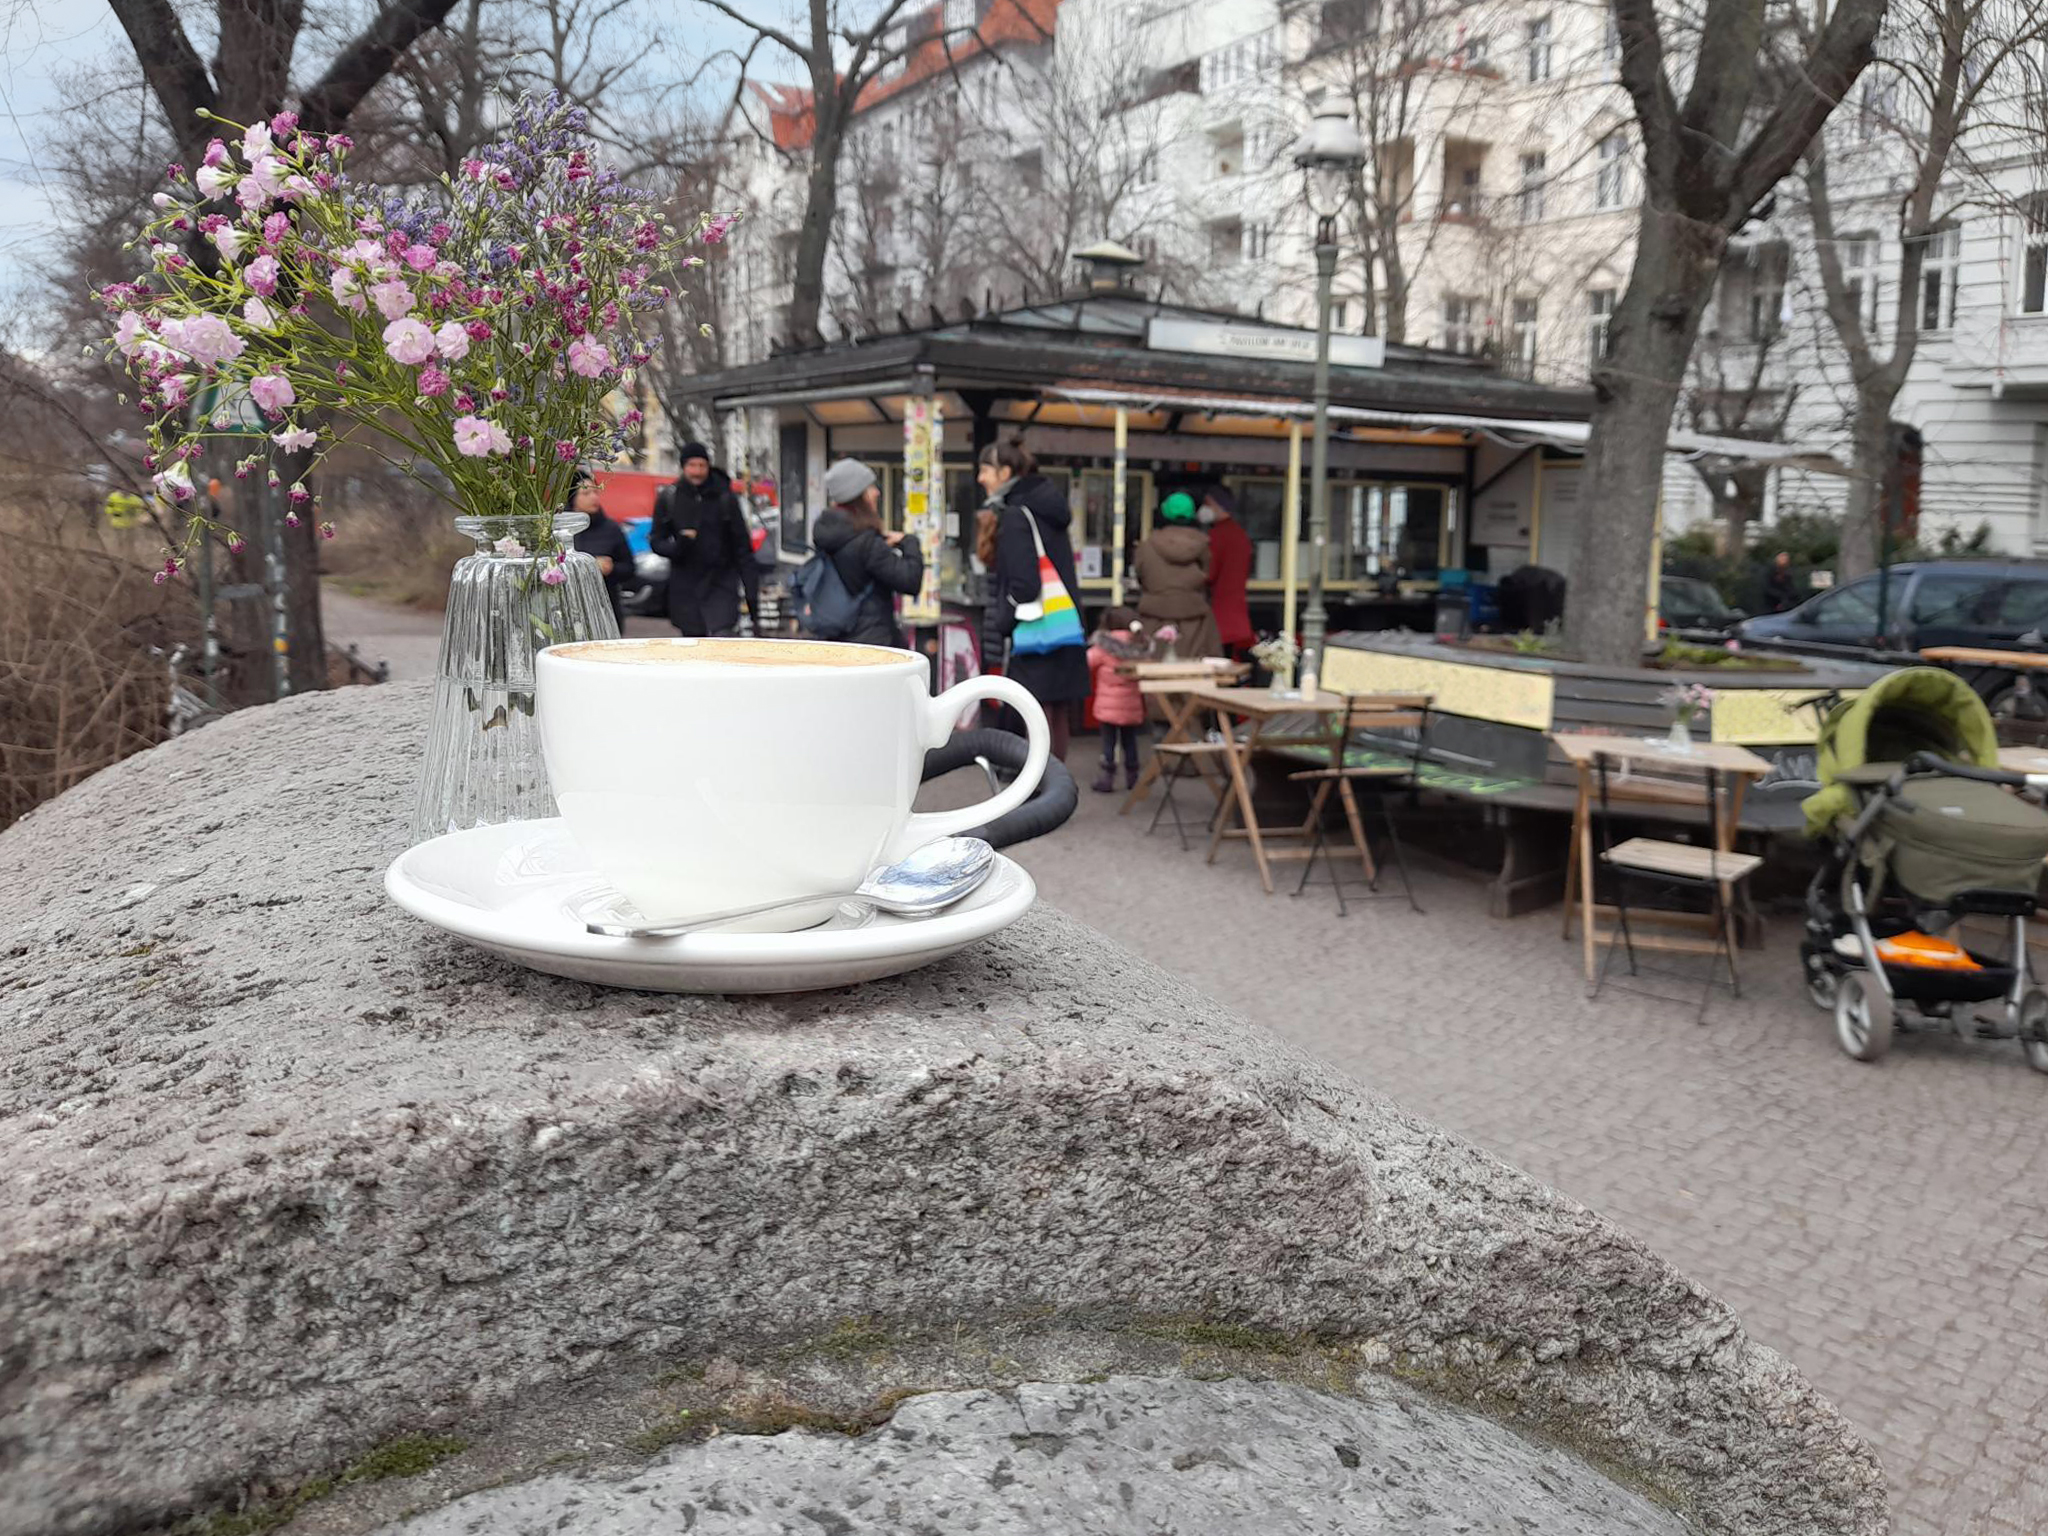 Cafés zum Draußensitzen in Berlin Der Pavillon am Ufer ist bei schönem Wetter ein beliebter Kieztreffpunkt.